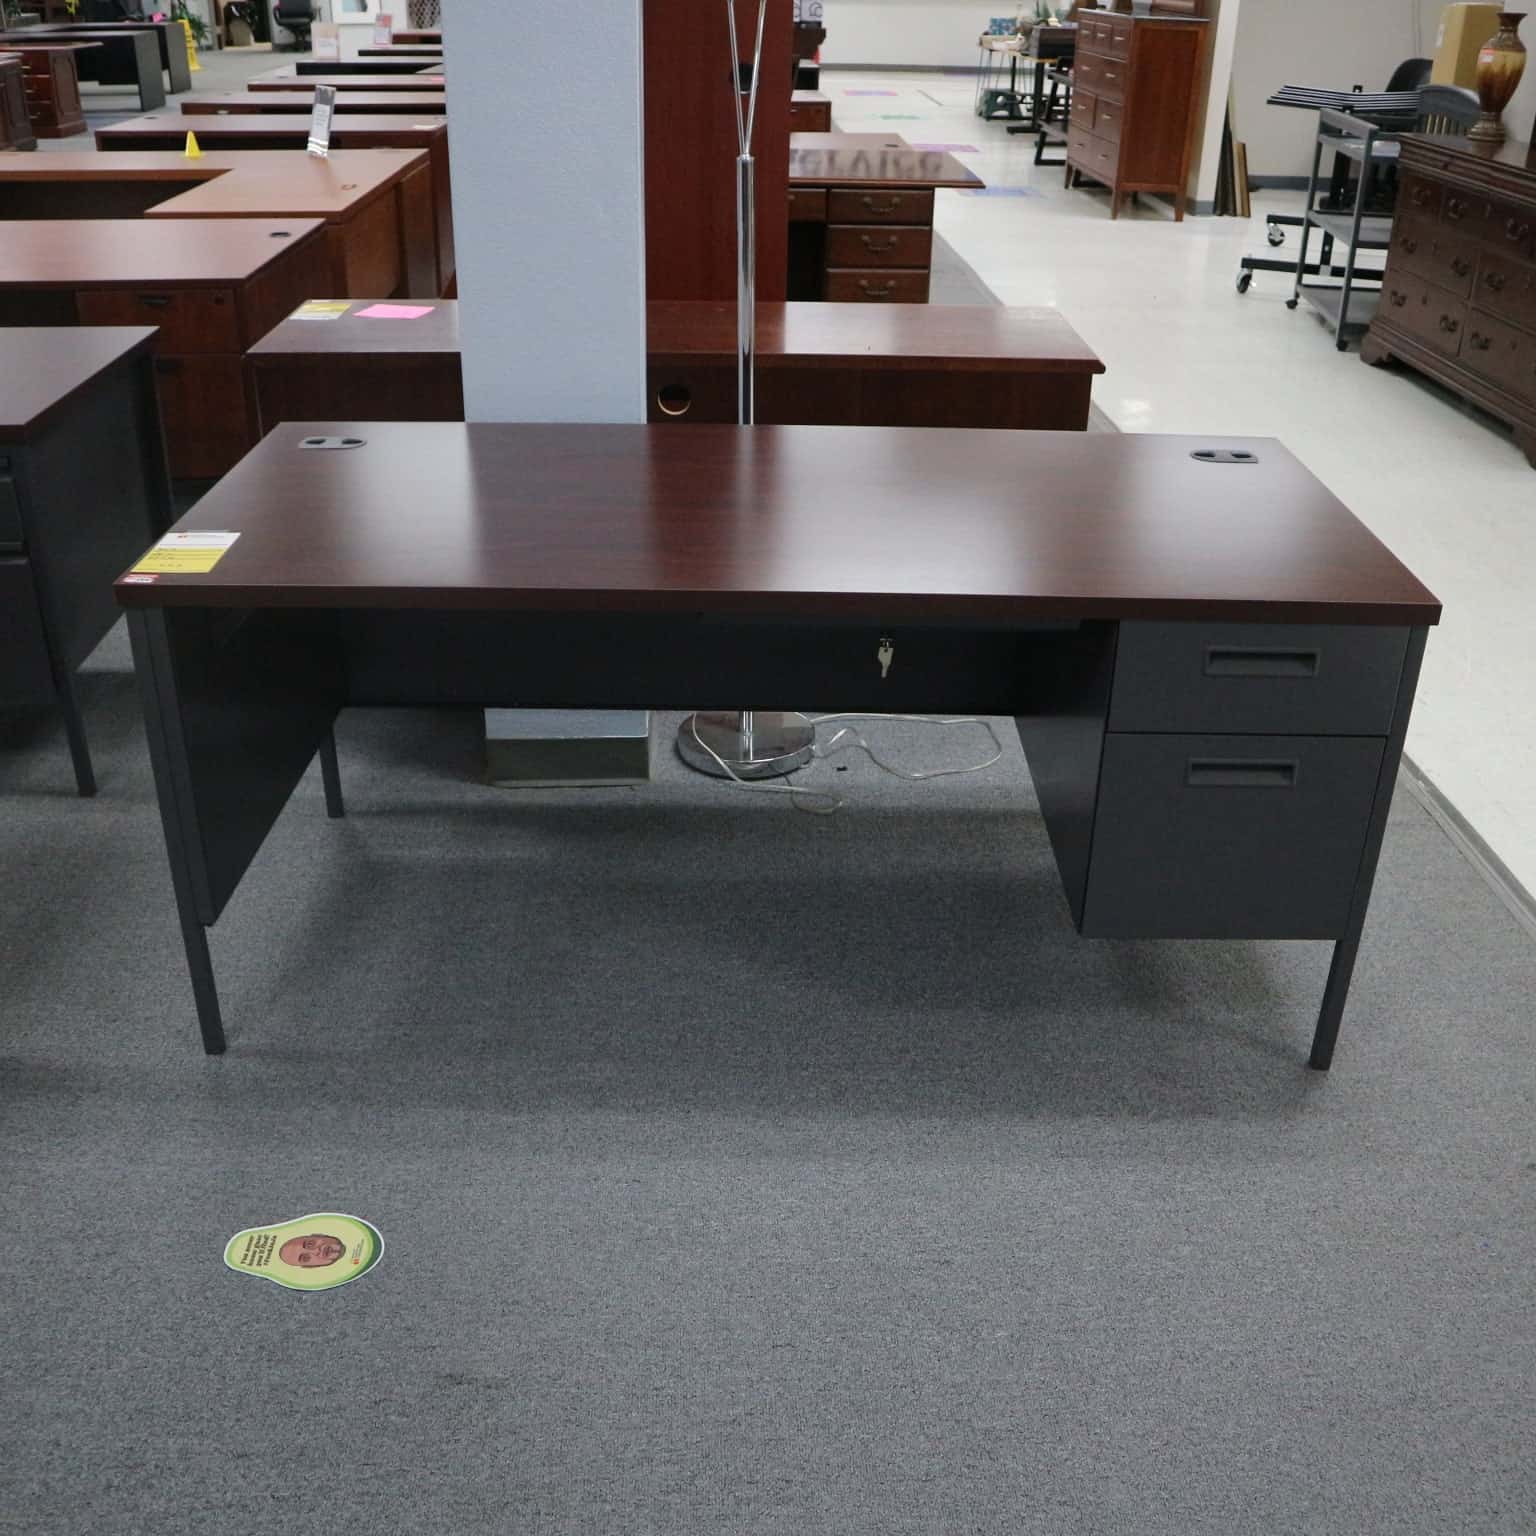 The Hon Desk 66